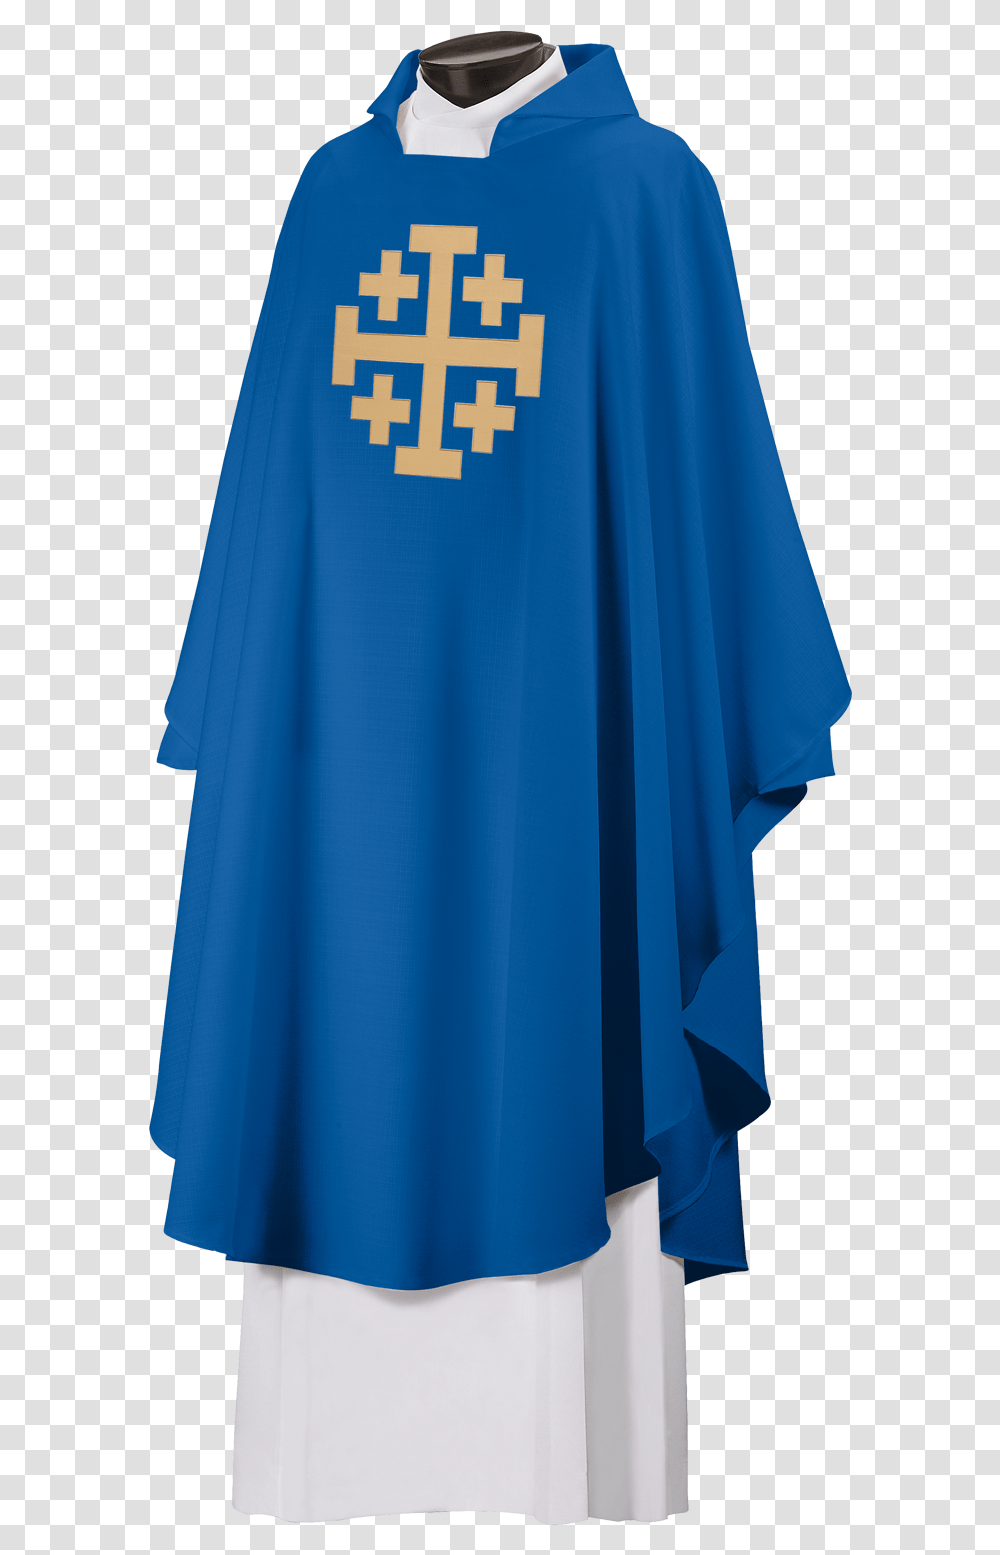 Christian Cross, Apparel, Shirt, Cloak Transparent Png